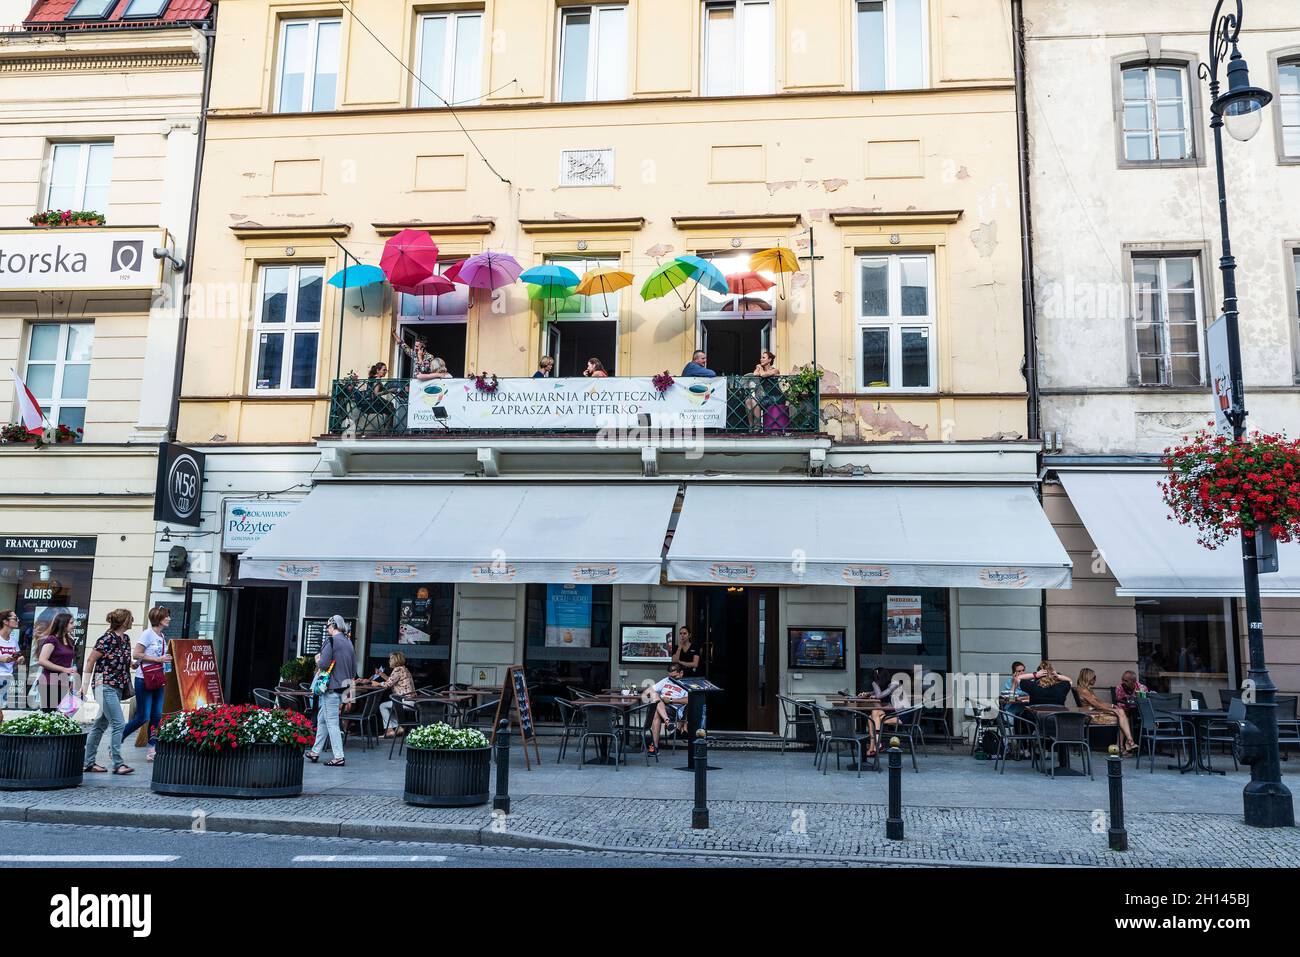 Varsovie, Pologne - 1er septembre 2018 : Nowy Swiat, rue commerçante avec un bar avec parasols multicolores et des boutiques et des gens autour dans la vieille ville de Banque D'Images